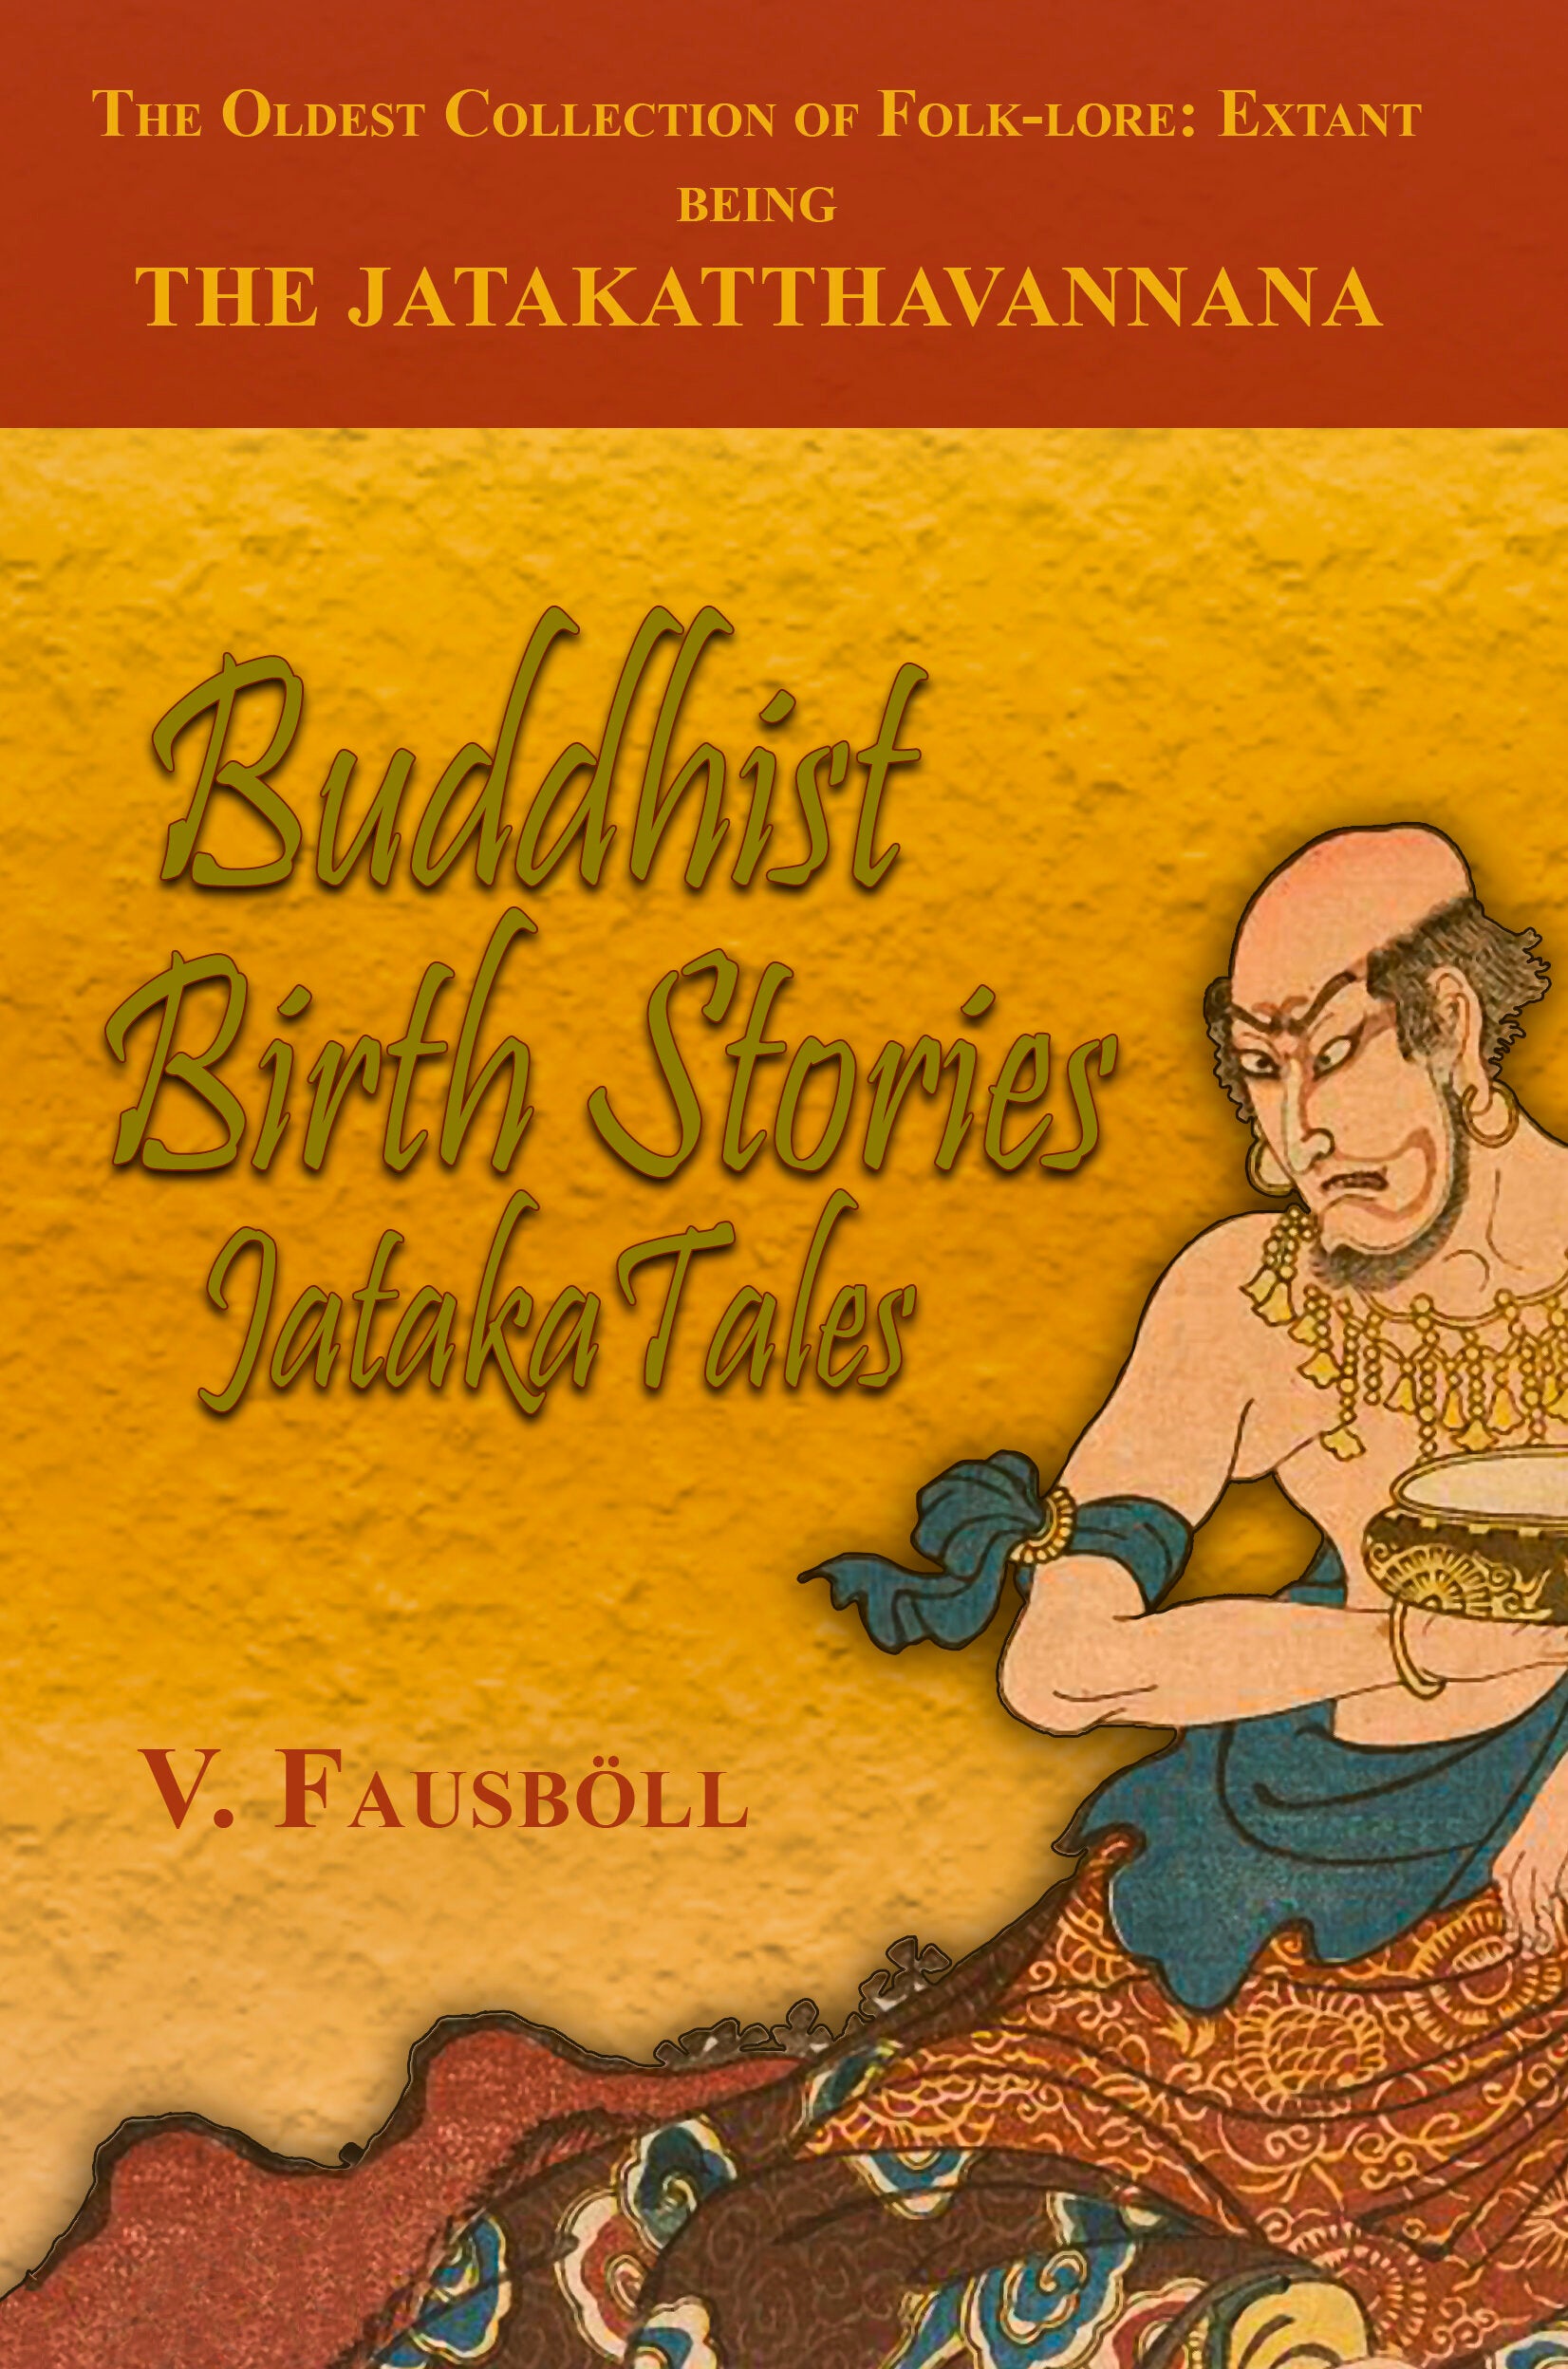 Buddhist Birth Stories or Jataka Tales